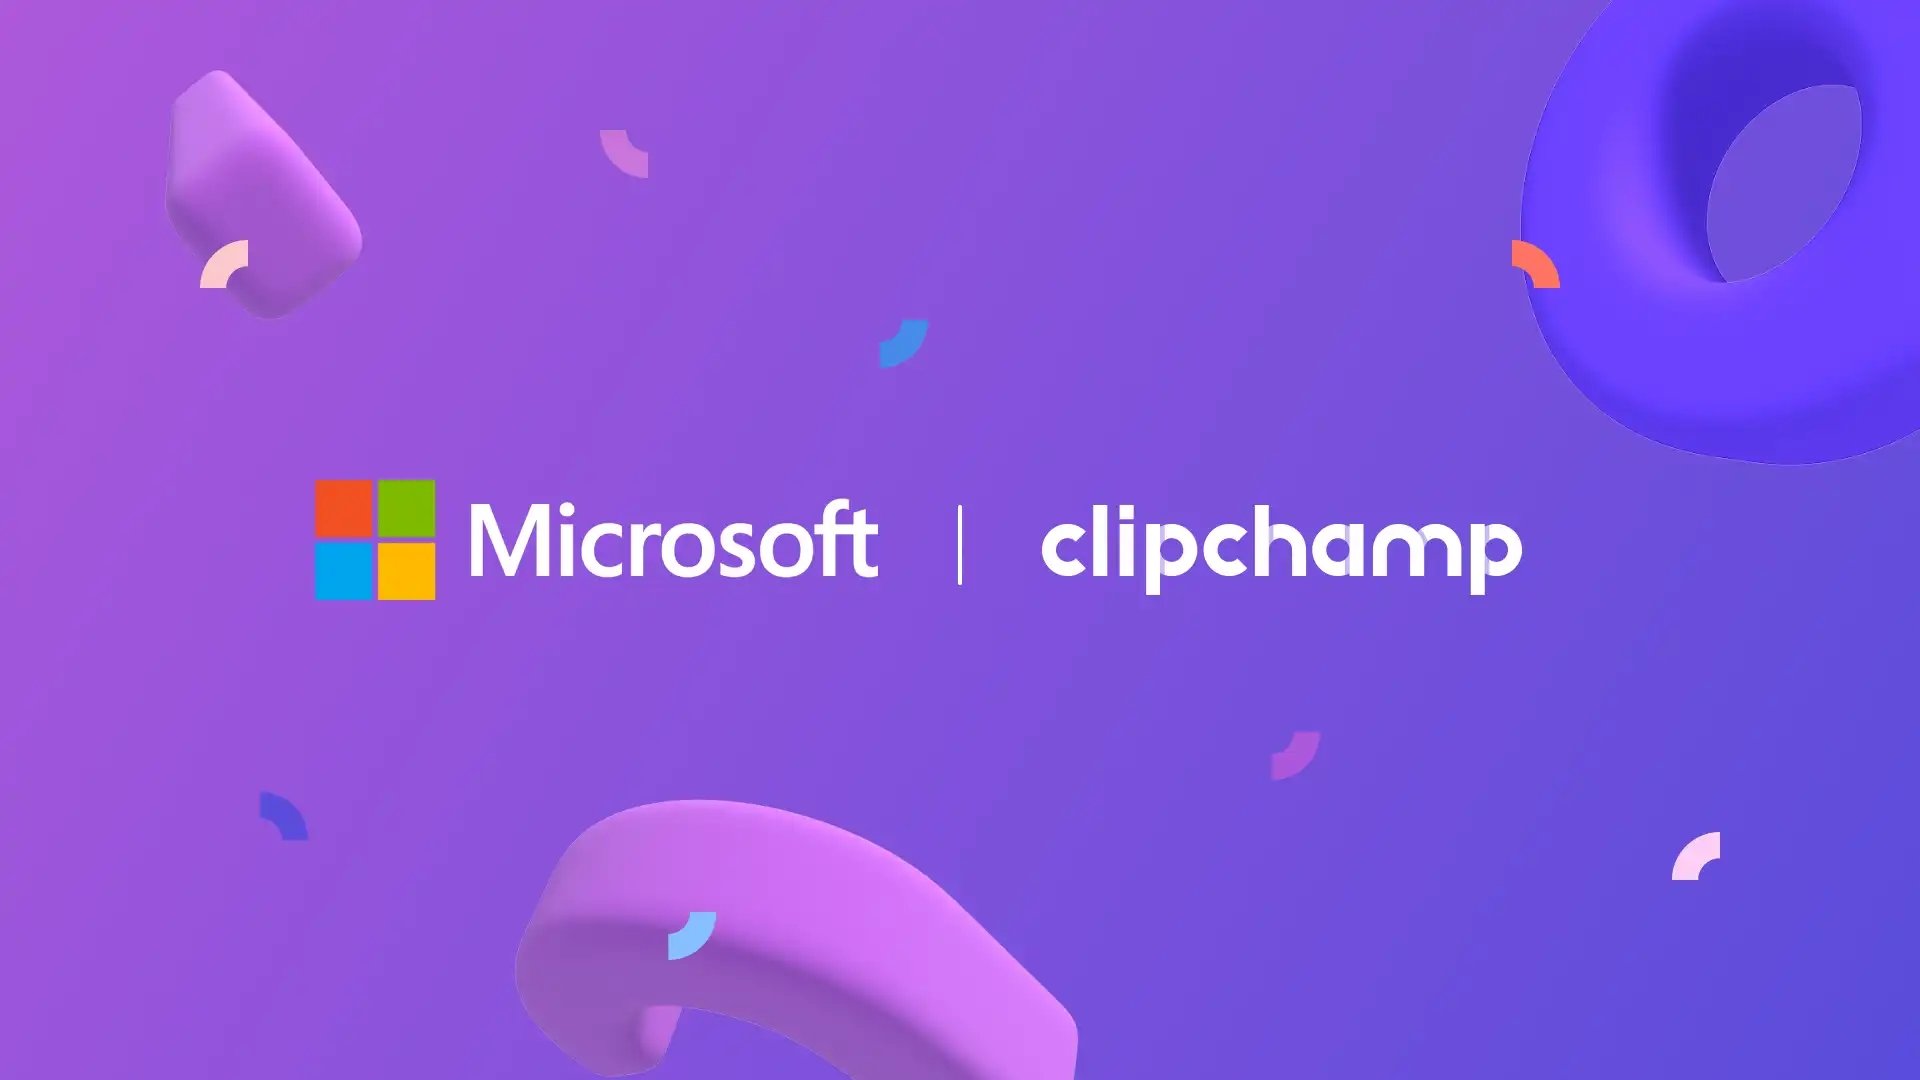 Clipchamp logo com a Microsoft